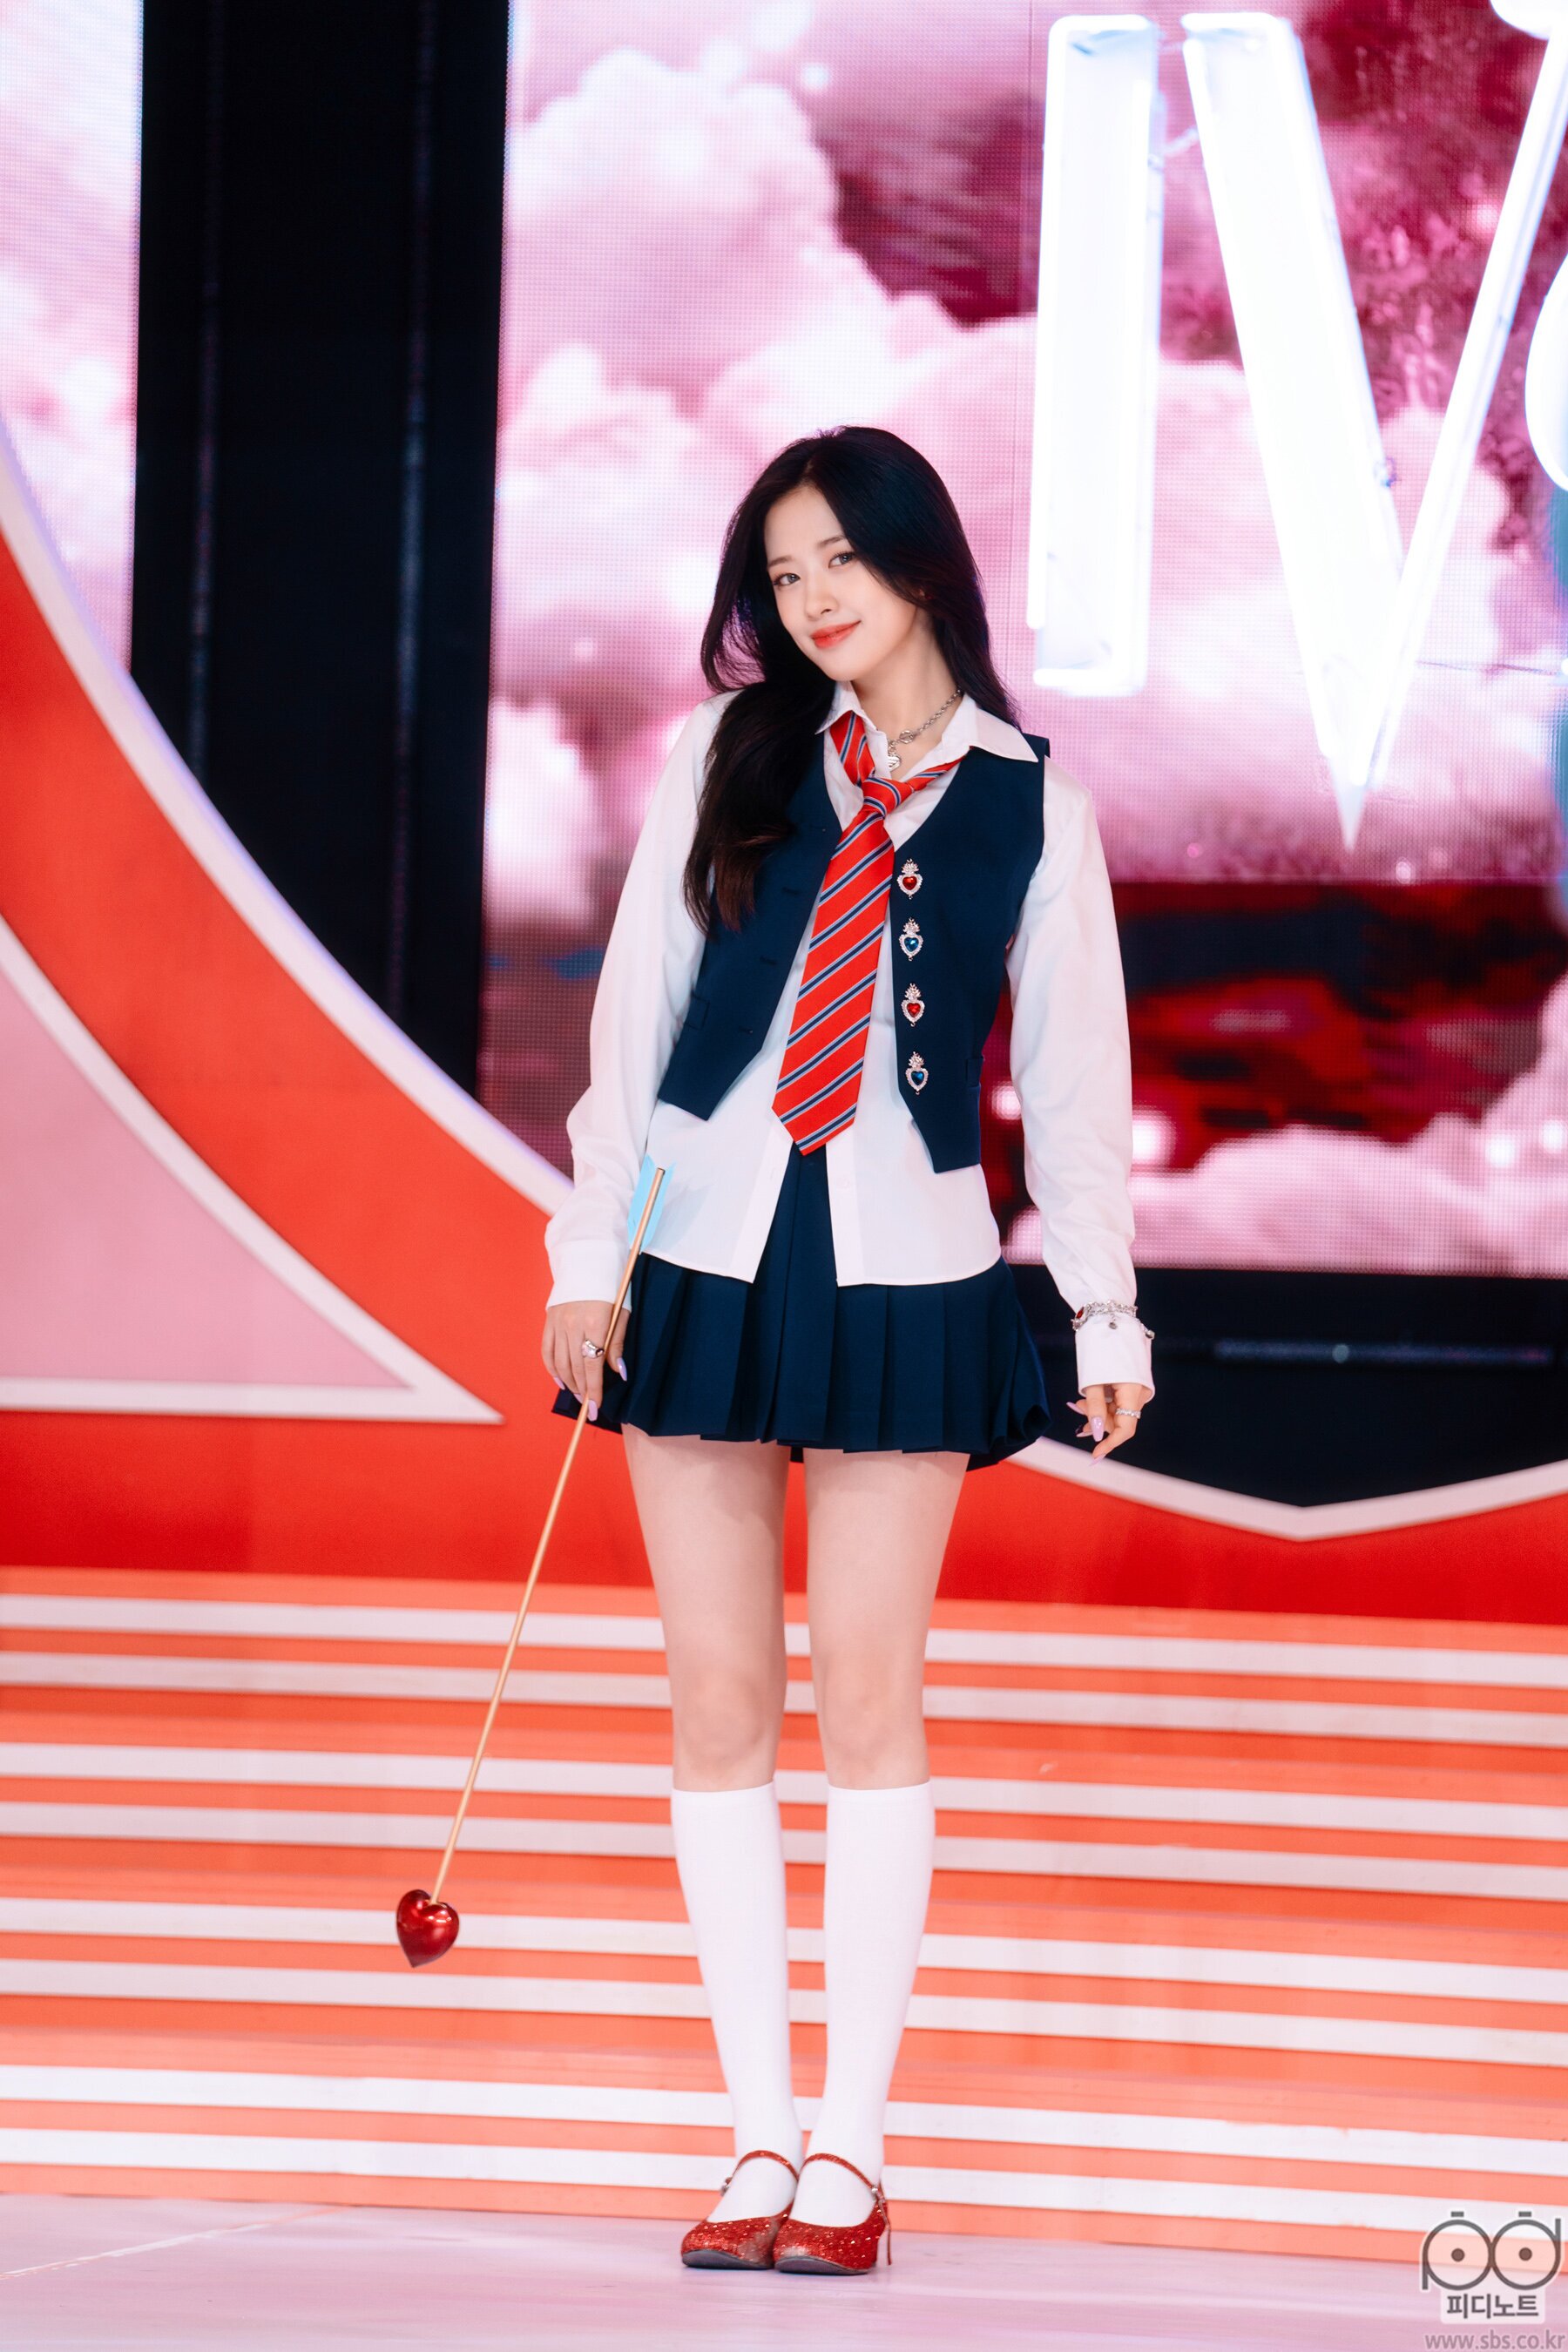 April 10, 2022 IVE Yujin - 'LOVE DIVE' at Inkigayo | Kpopping